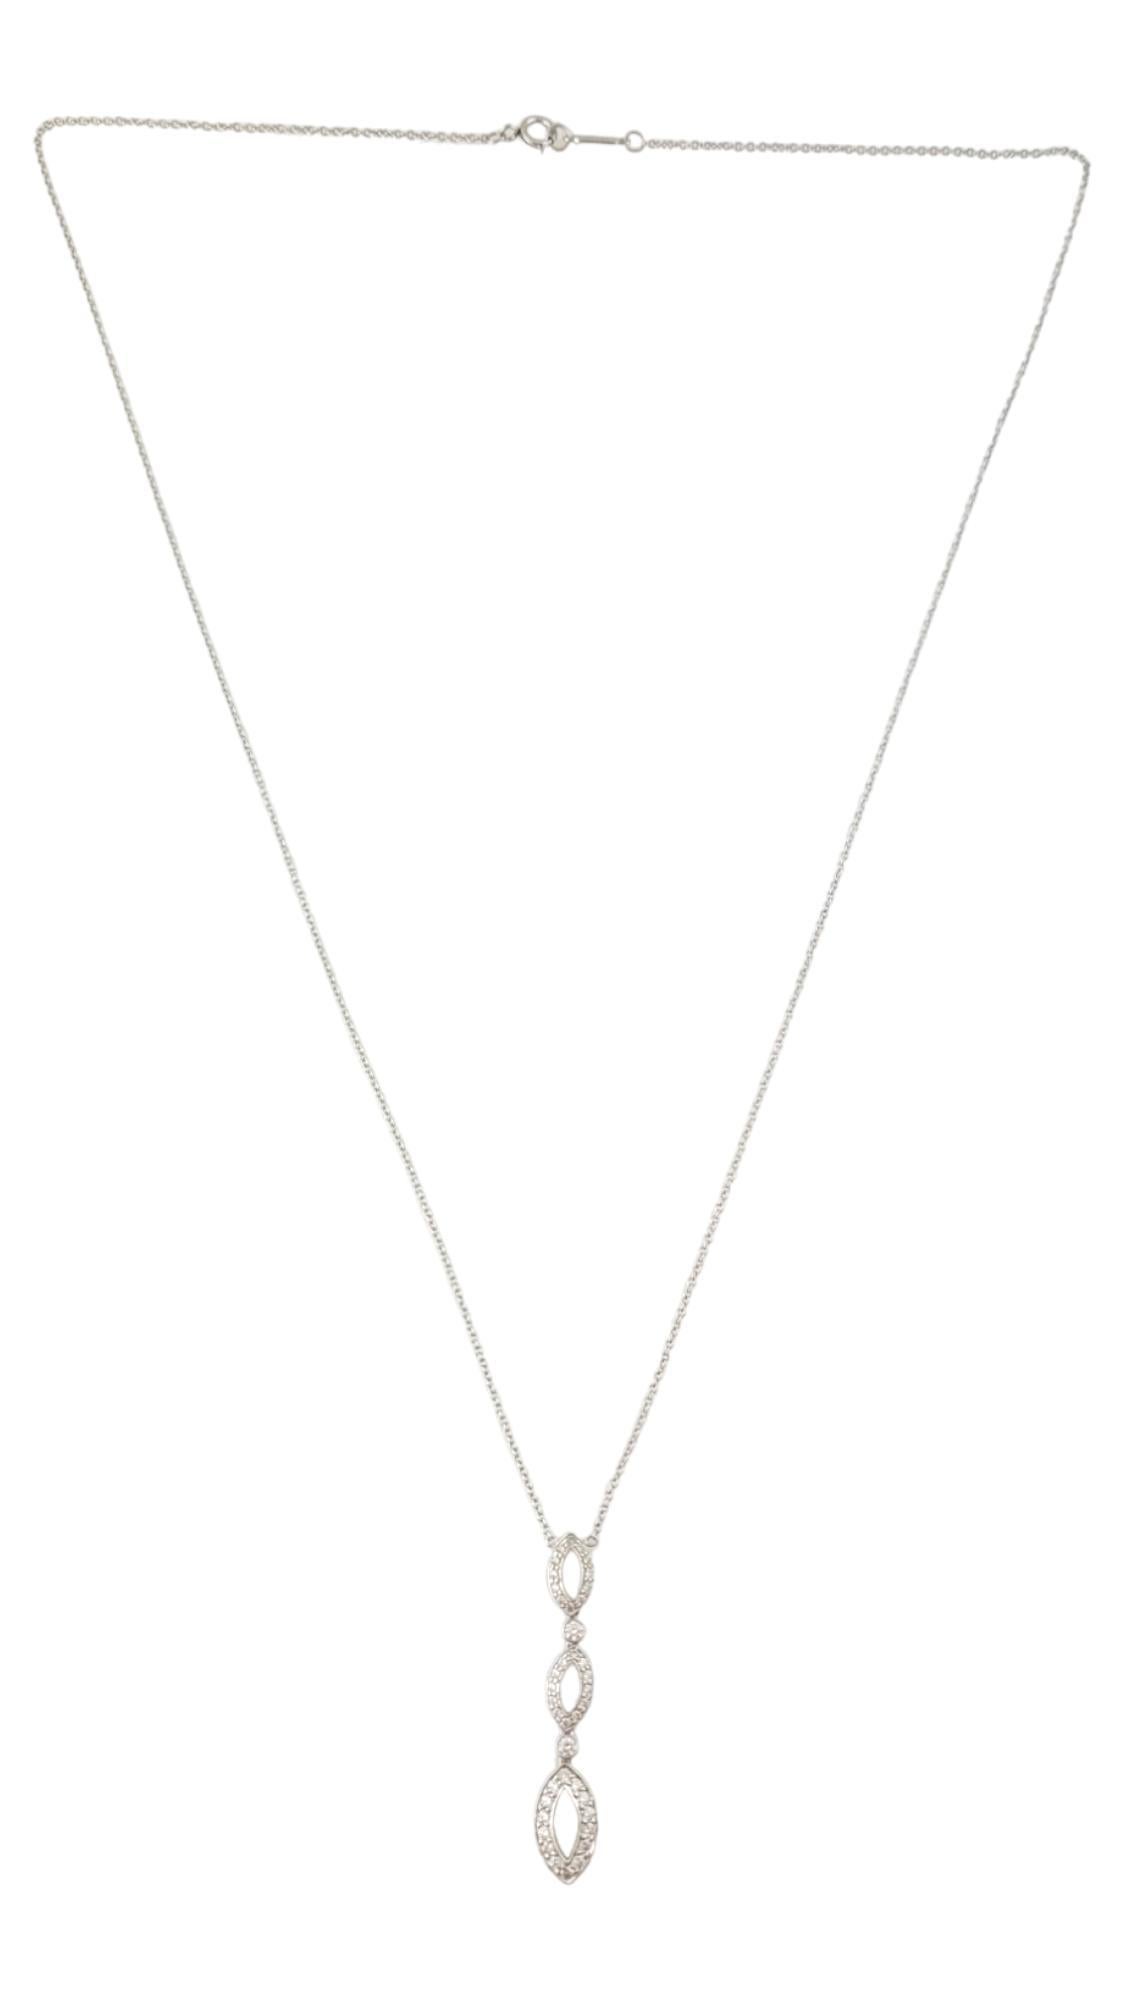 Tiffany & Co. Collier pendentif en platine avec diamants

Ce magnifique collier de gouttes Tiffany & Co. est serti en platine et est une pièce retirée de la collection Tiffany Swing.

3 stations flexibles sont serties d'environ 0,56 ct de